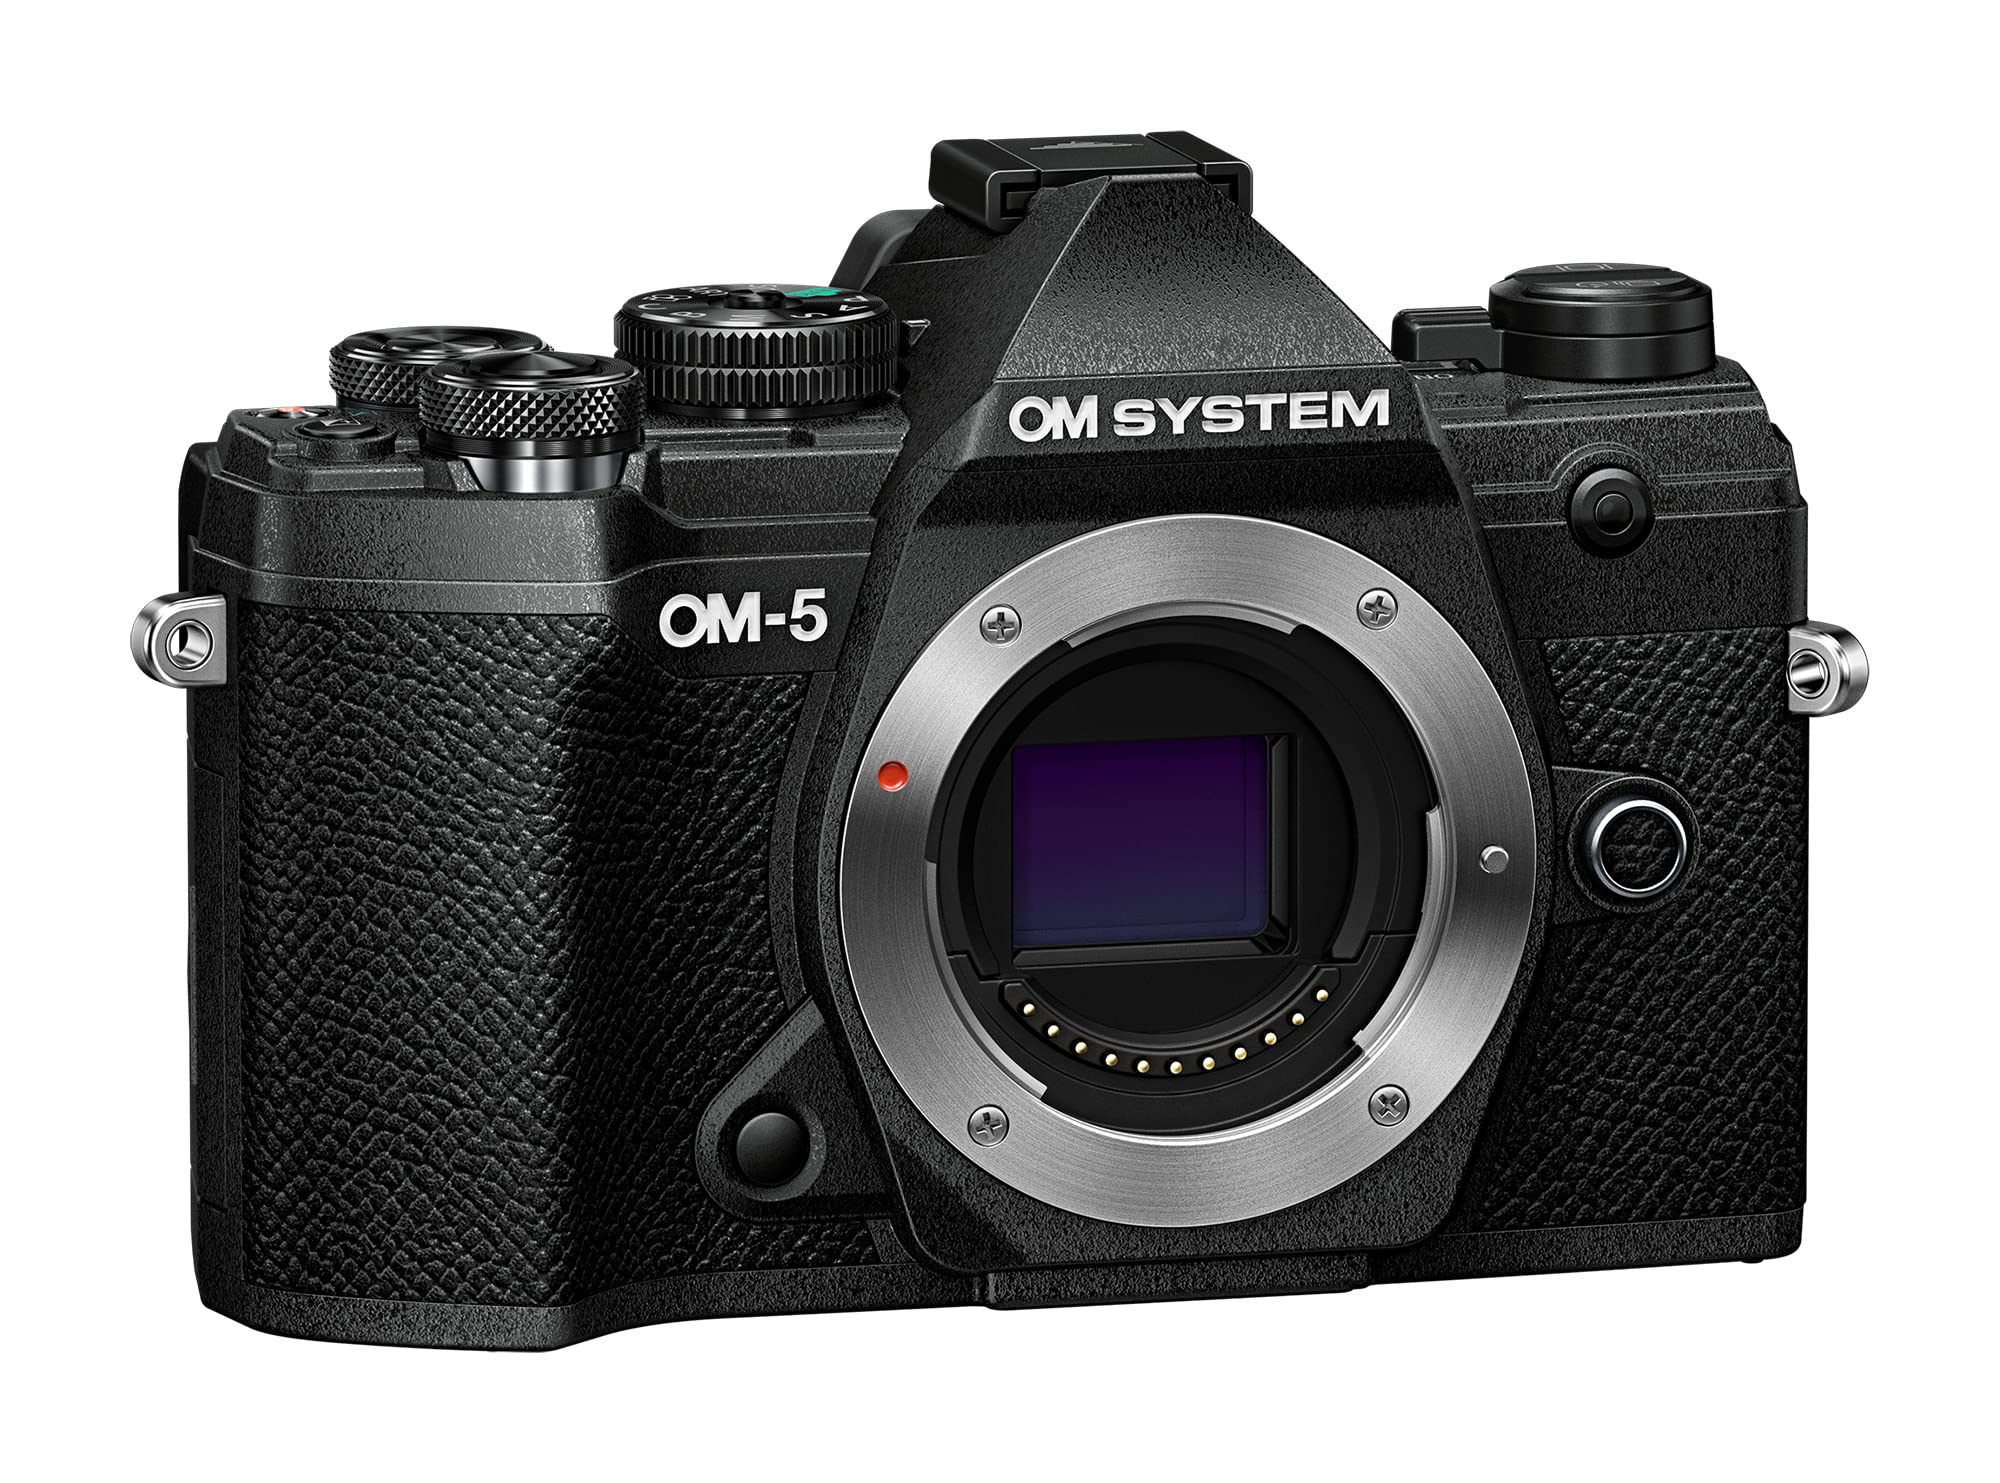 オリンパス Olympus OM System OM-5 Black Micro Four Thirds System Camera Outdoor Camera Weather Sealed Design 5-Axis Imag